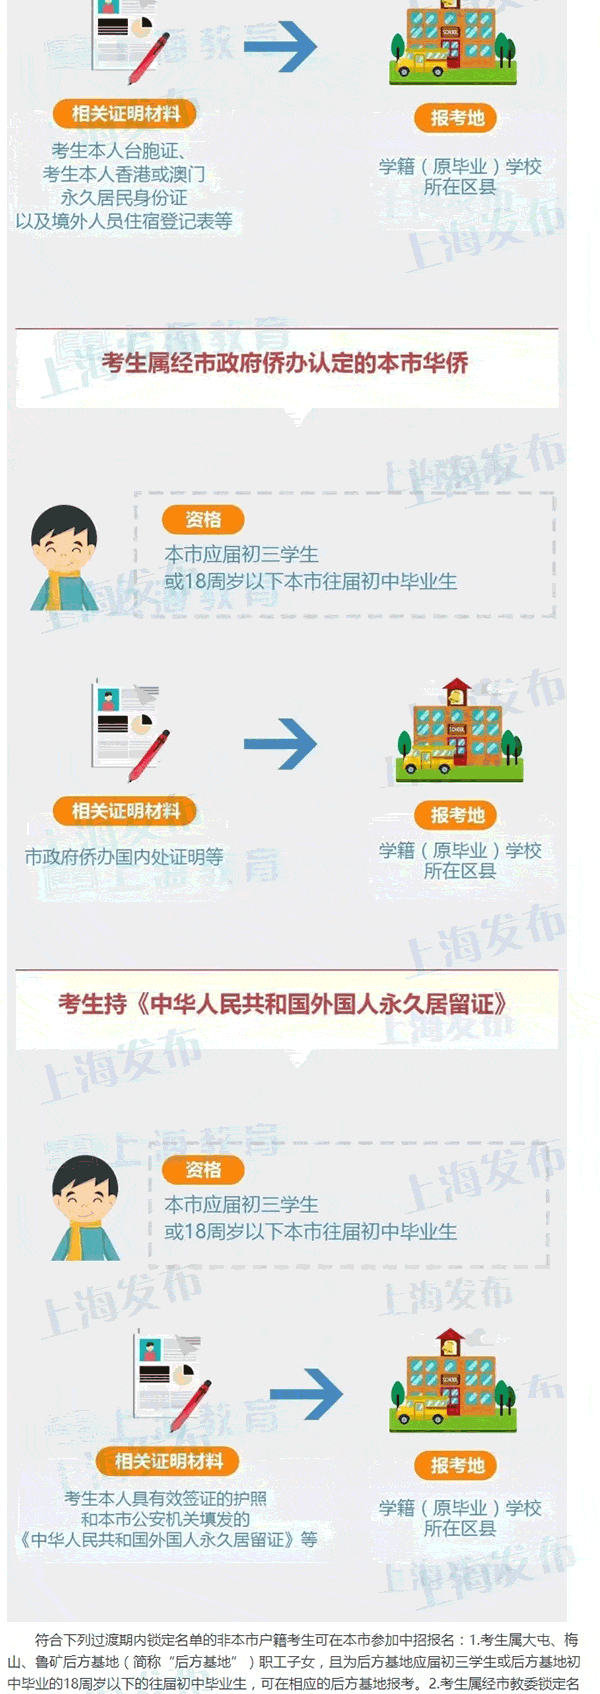 2017上海中考12月22日起报名 报名政策公布4